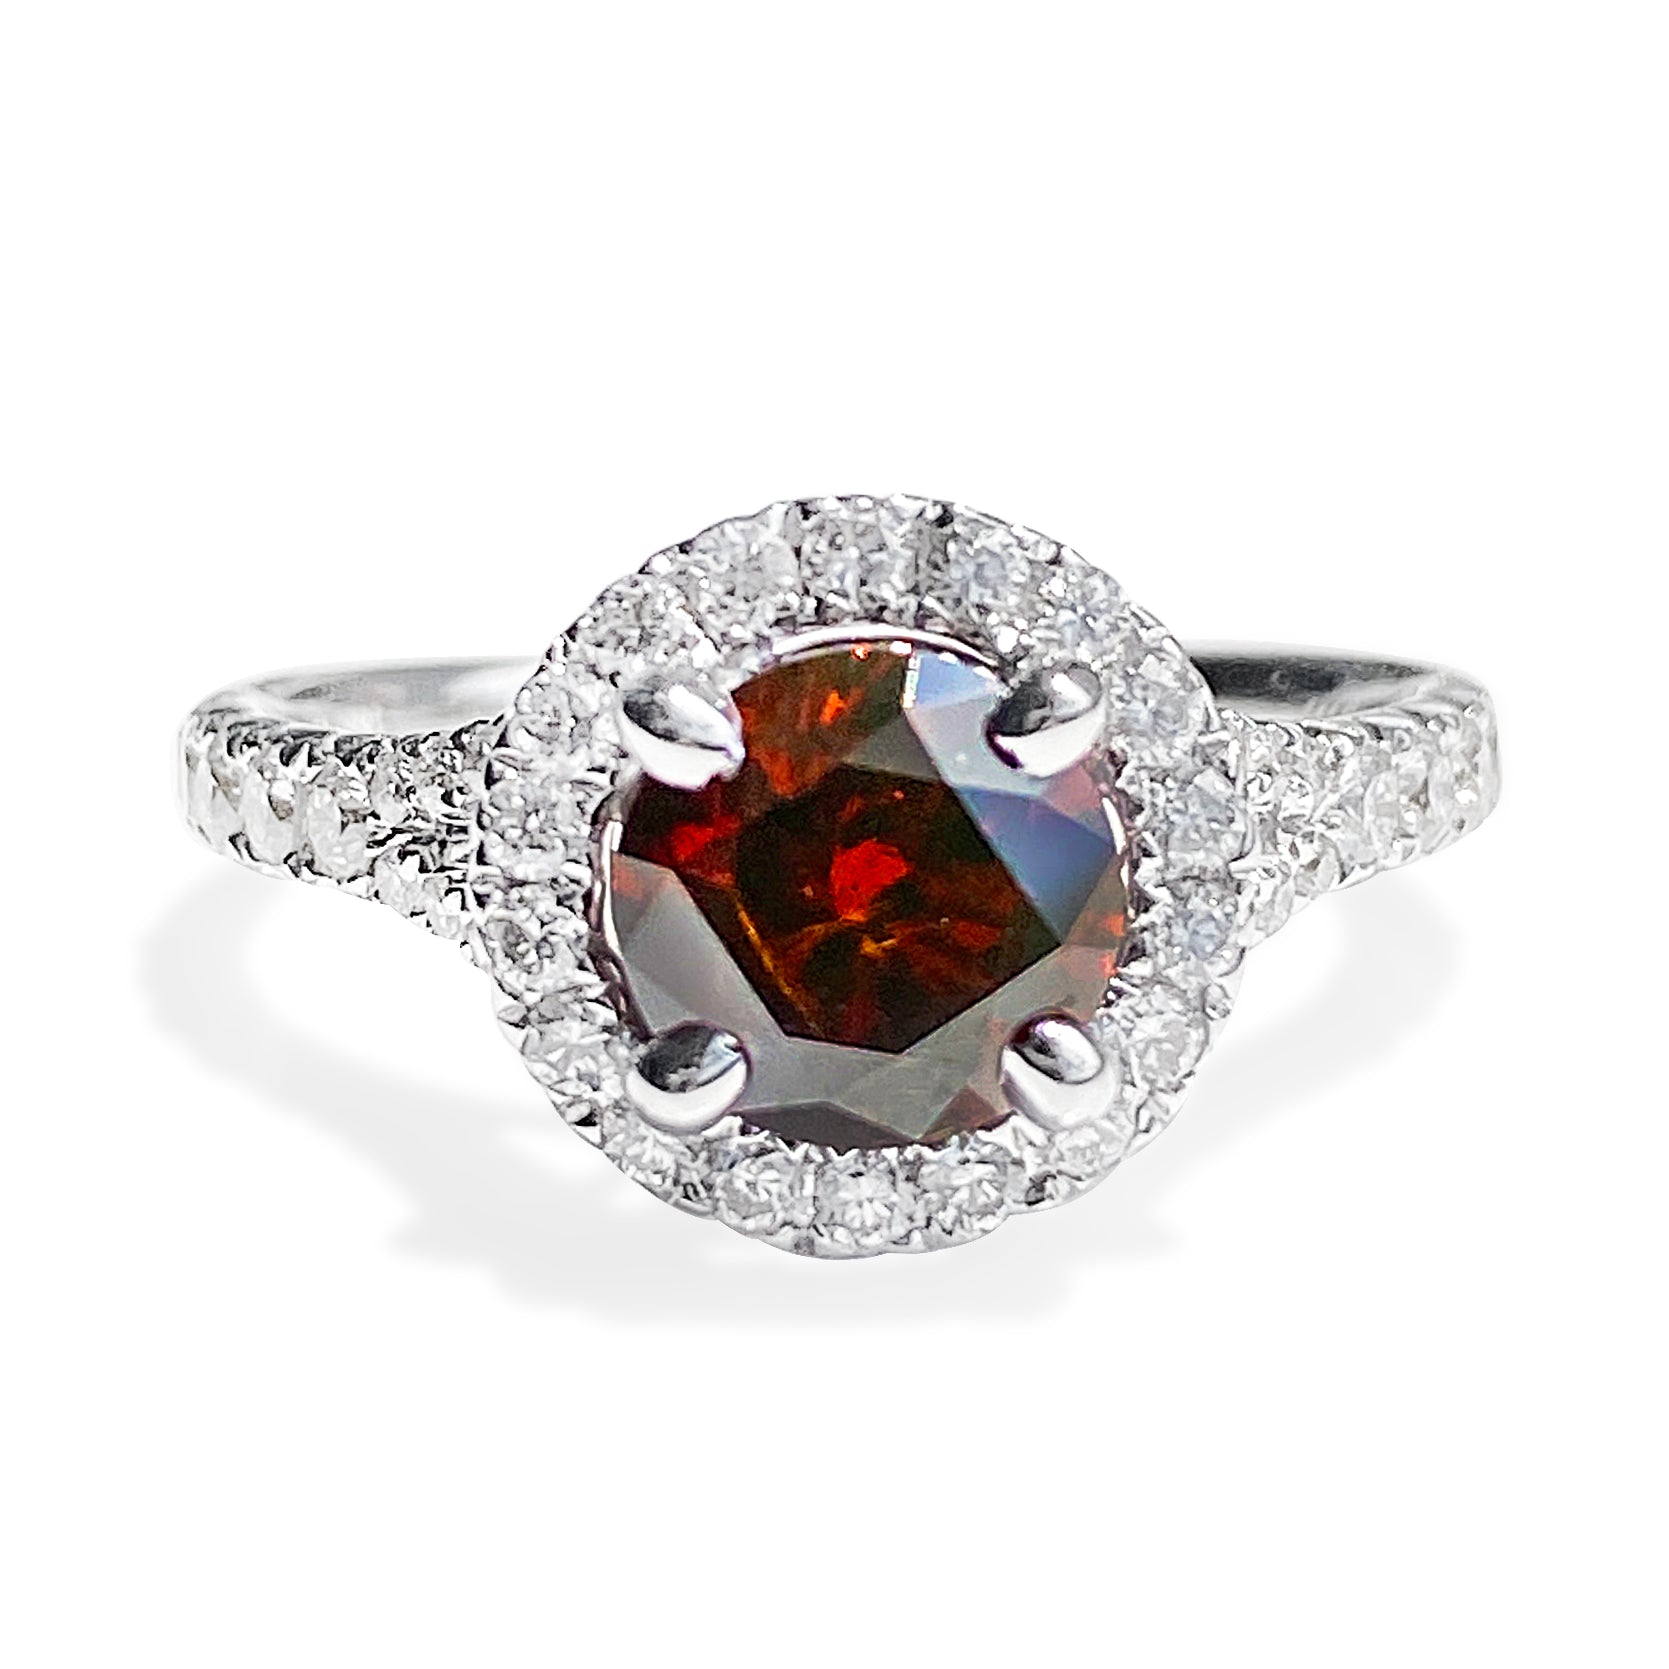 1.18 Carat Orange-Brown Round Brilliant Diamond Ring